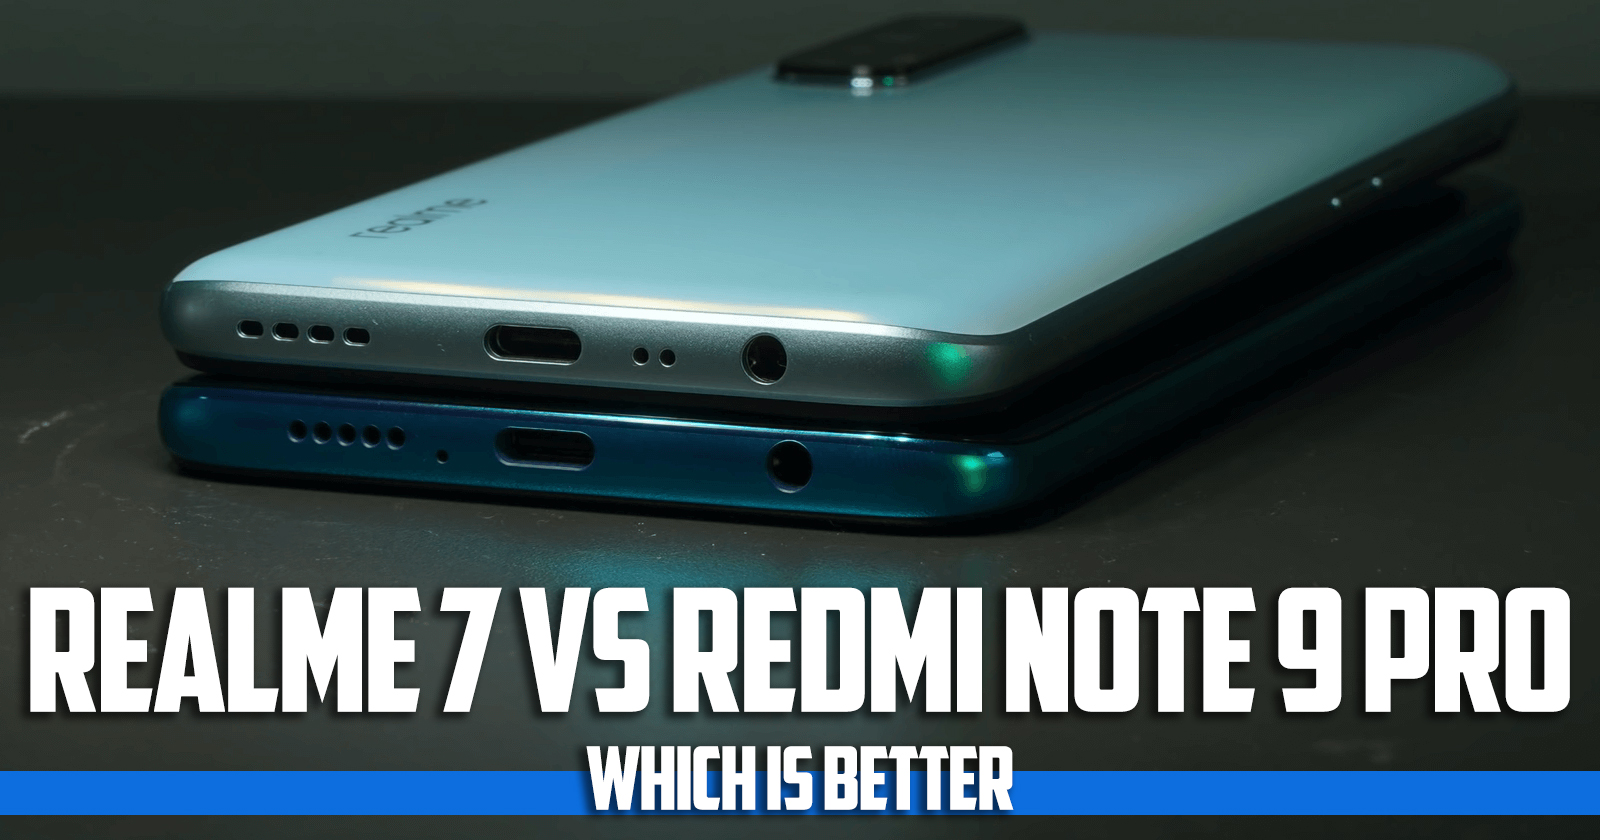 Realme7 vs Redmi note 9 pro which is better?